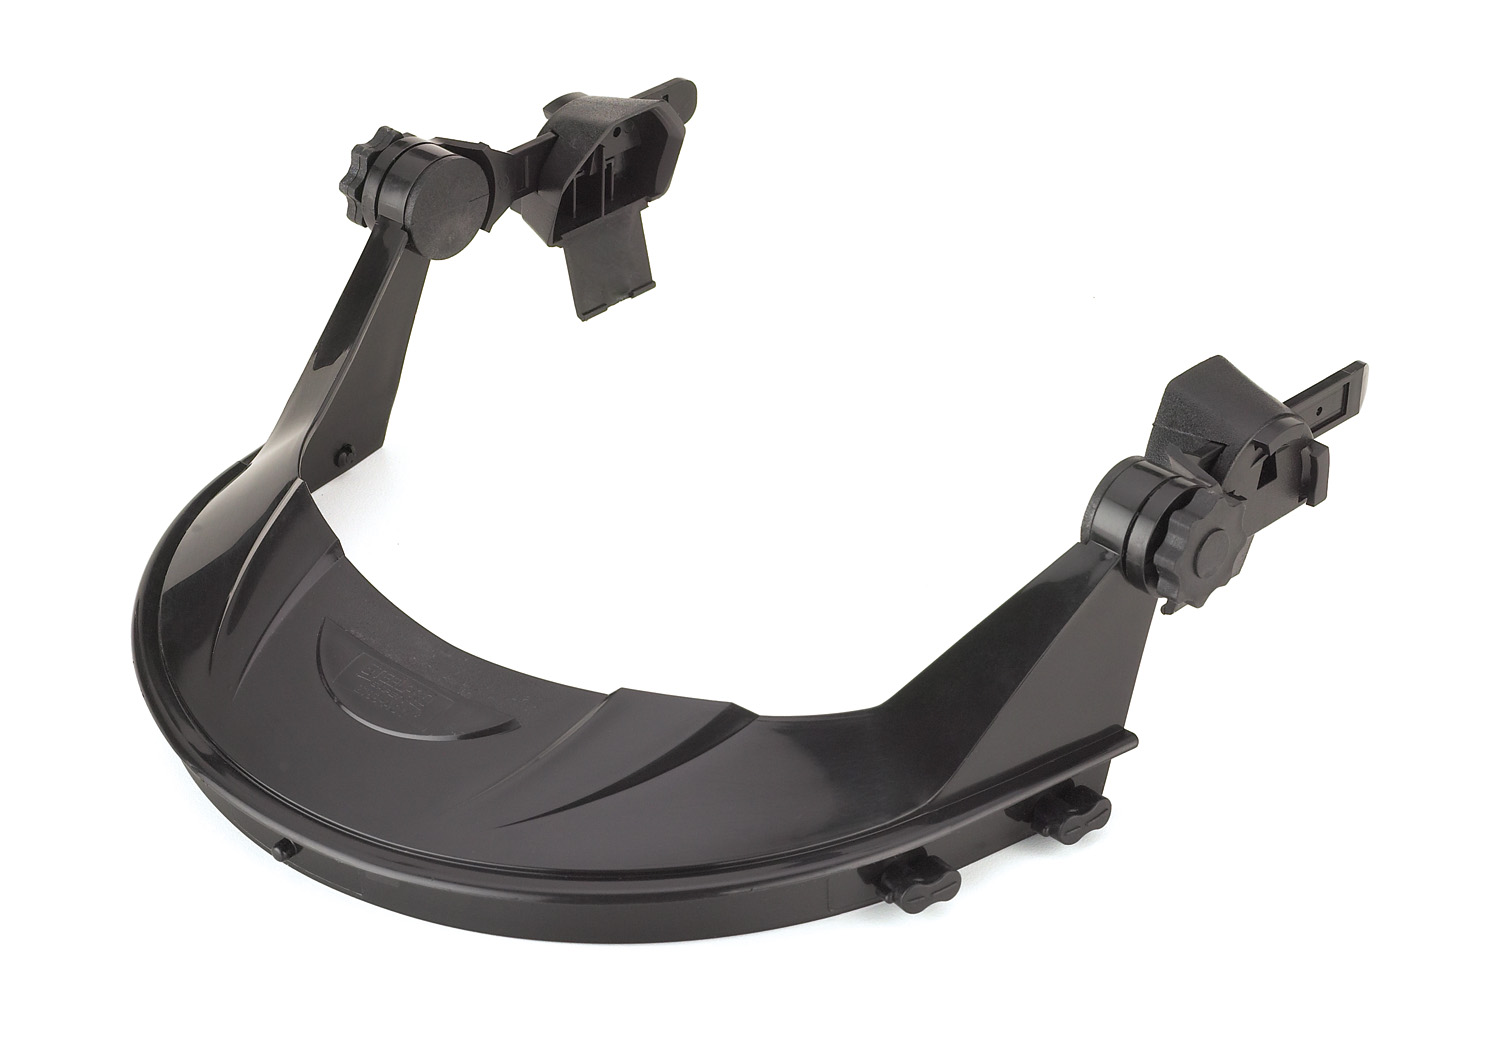 2188-ACV Protection des Yeux Écran facial gamme Volt Adaptateur pour casque Volt